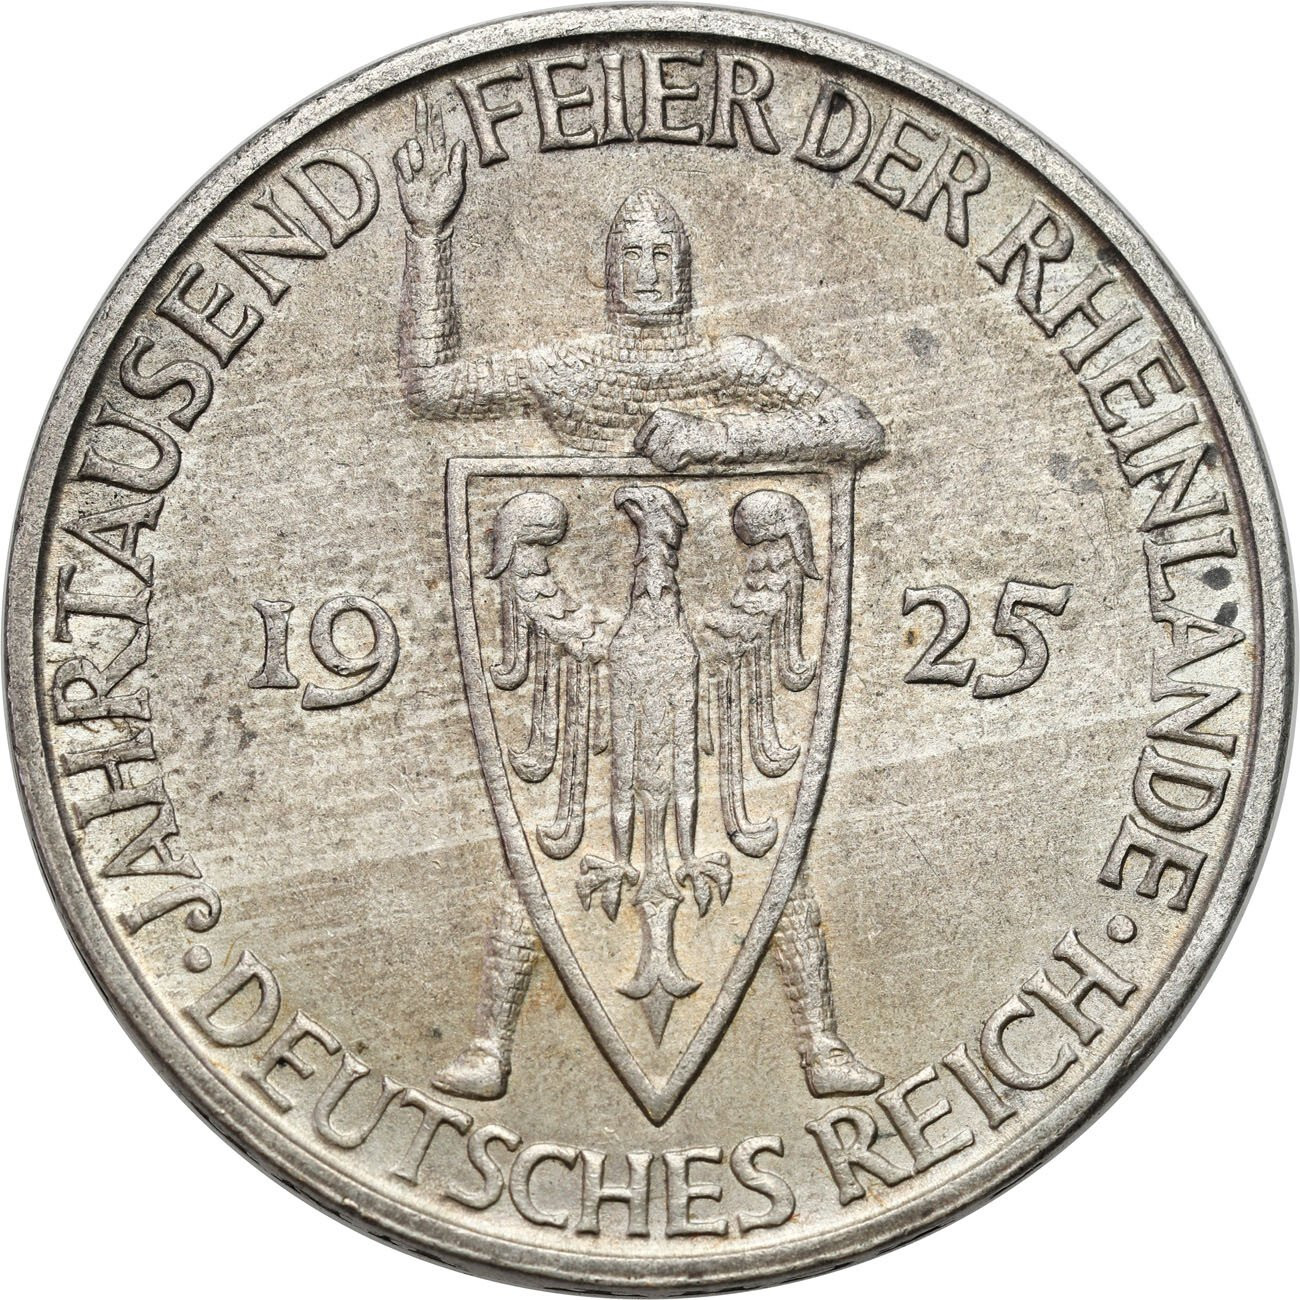 Niemcy, Weimar. 3 marki 1925 D, Rheinlande